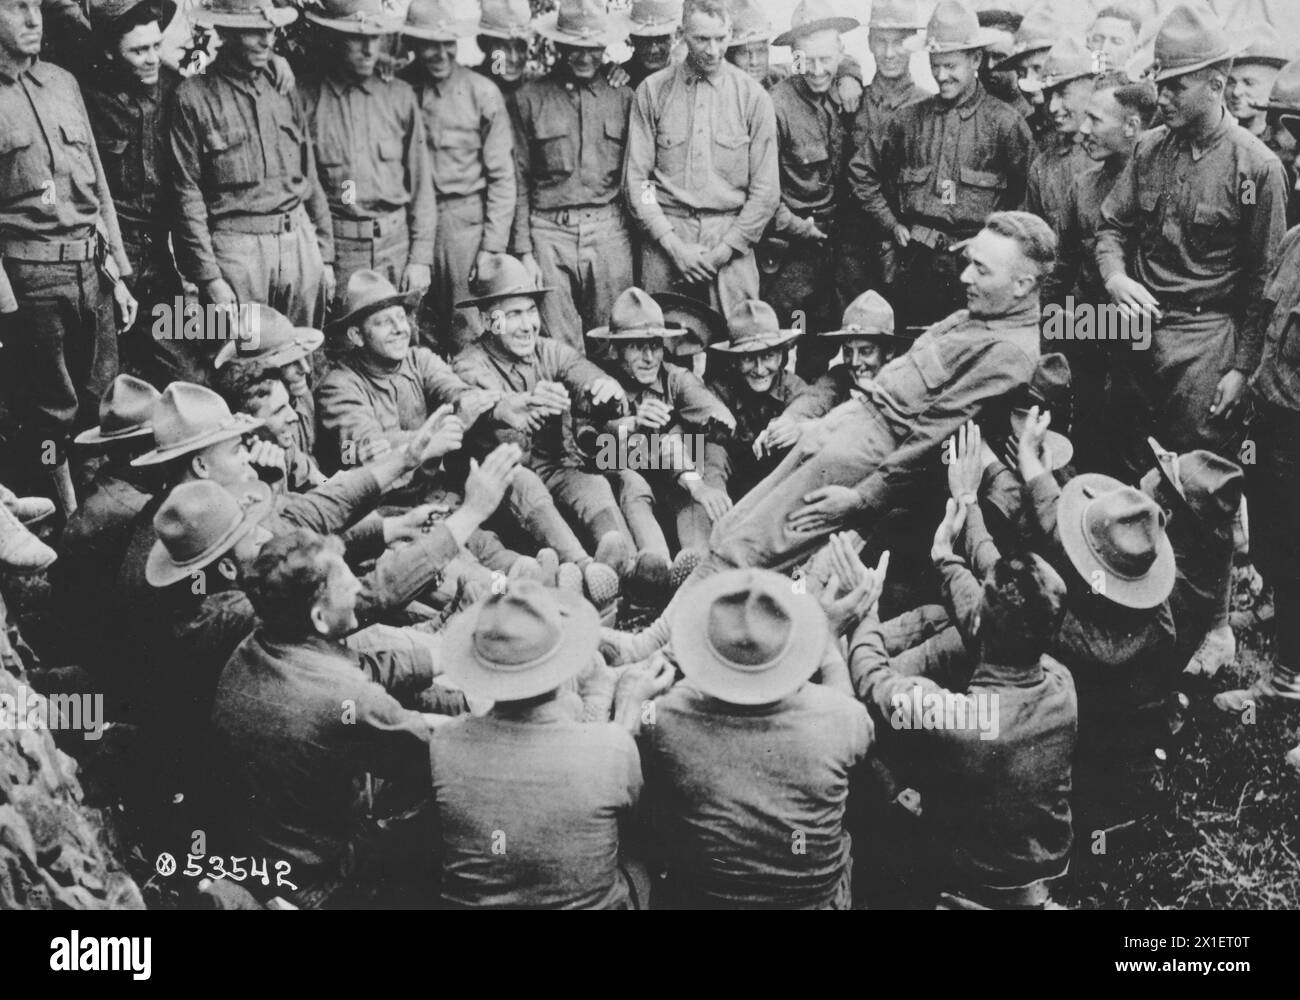 Soldats à la U.S. School of Military Aeronautics, Ohio State College, hommes participant à un exercice de confiance ou s'amusant assis dans un cercle et poussant un homme autour qui est tombé limber dans leurs bras CA. 1918-1919 Banque D'Images